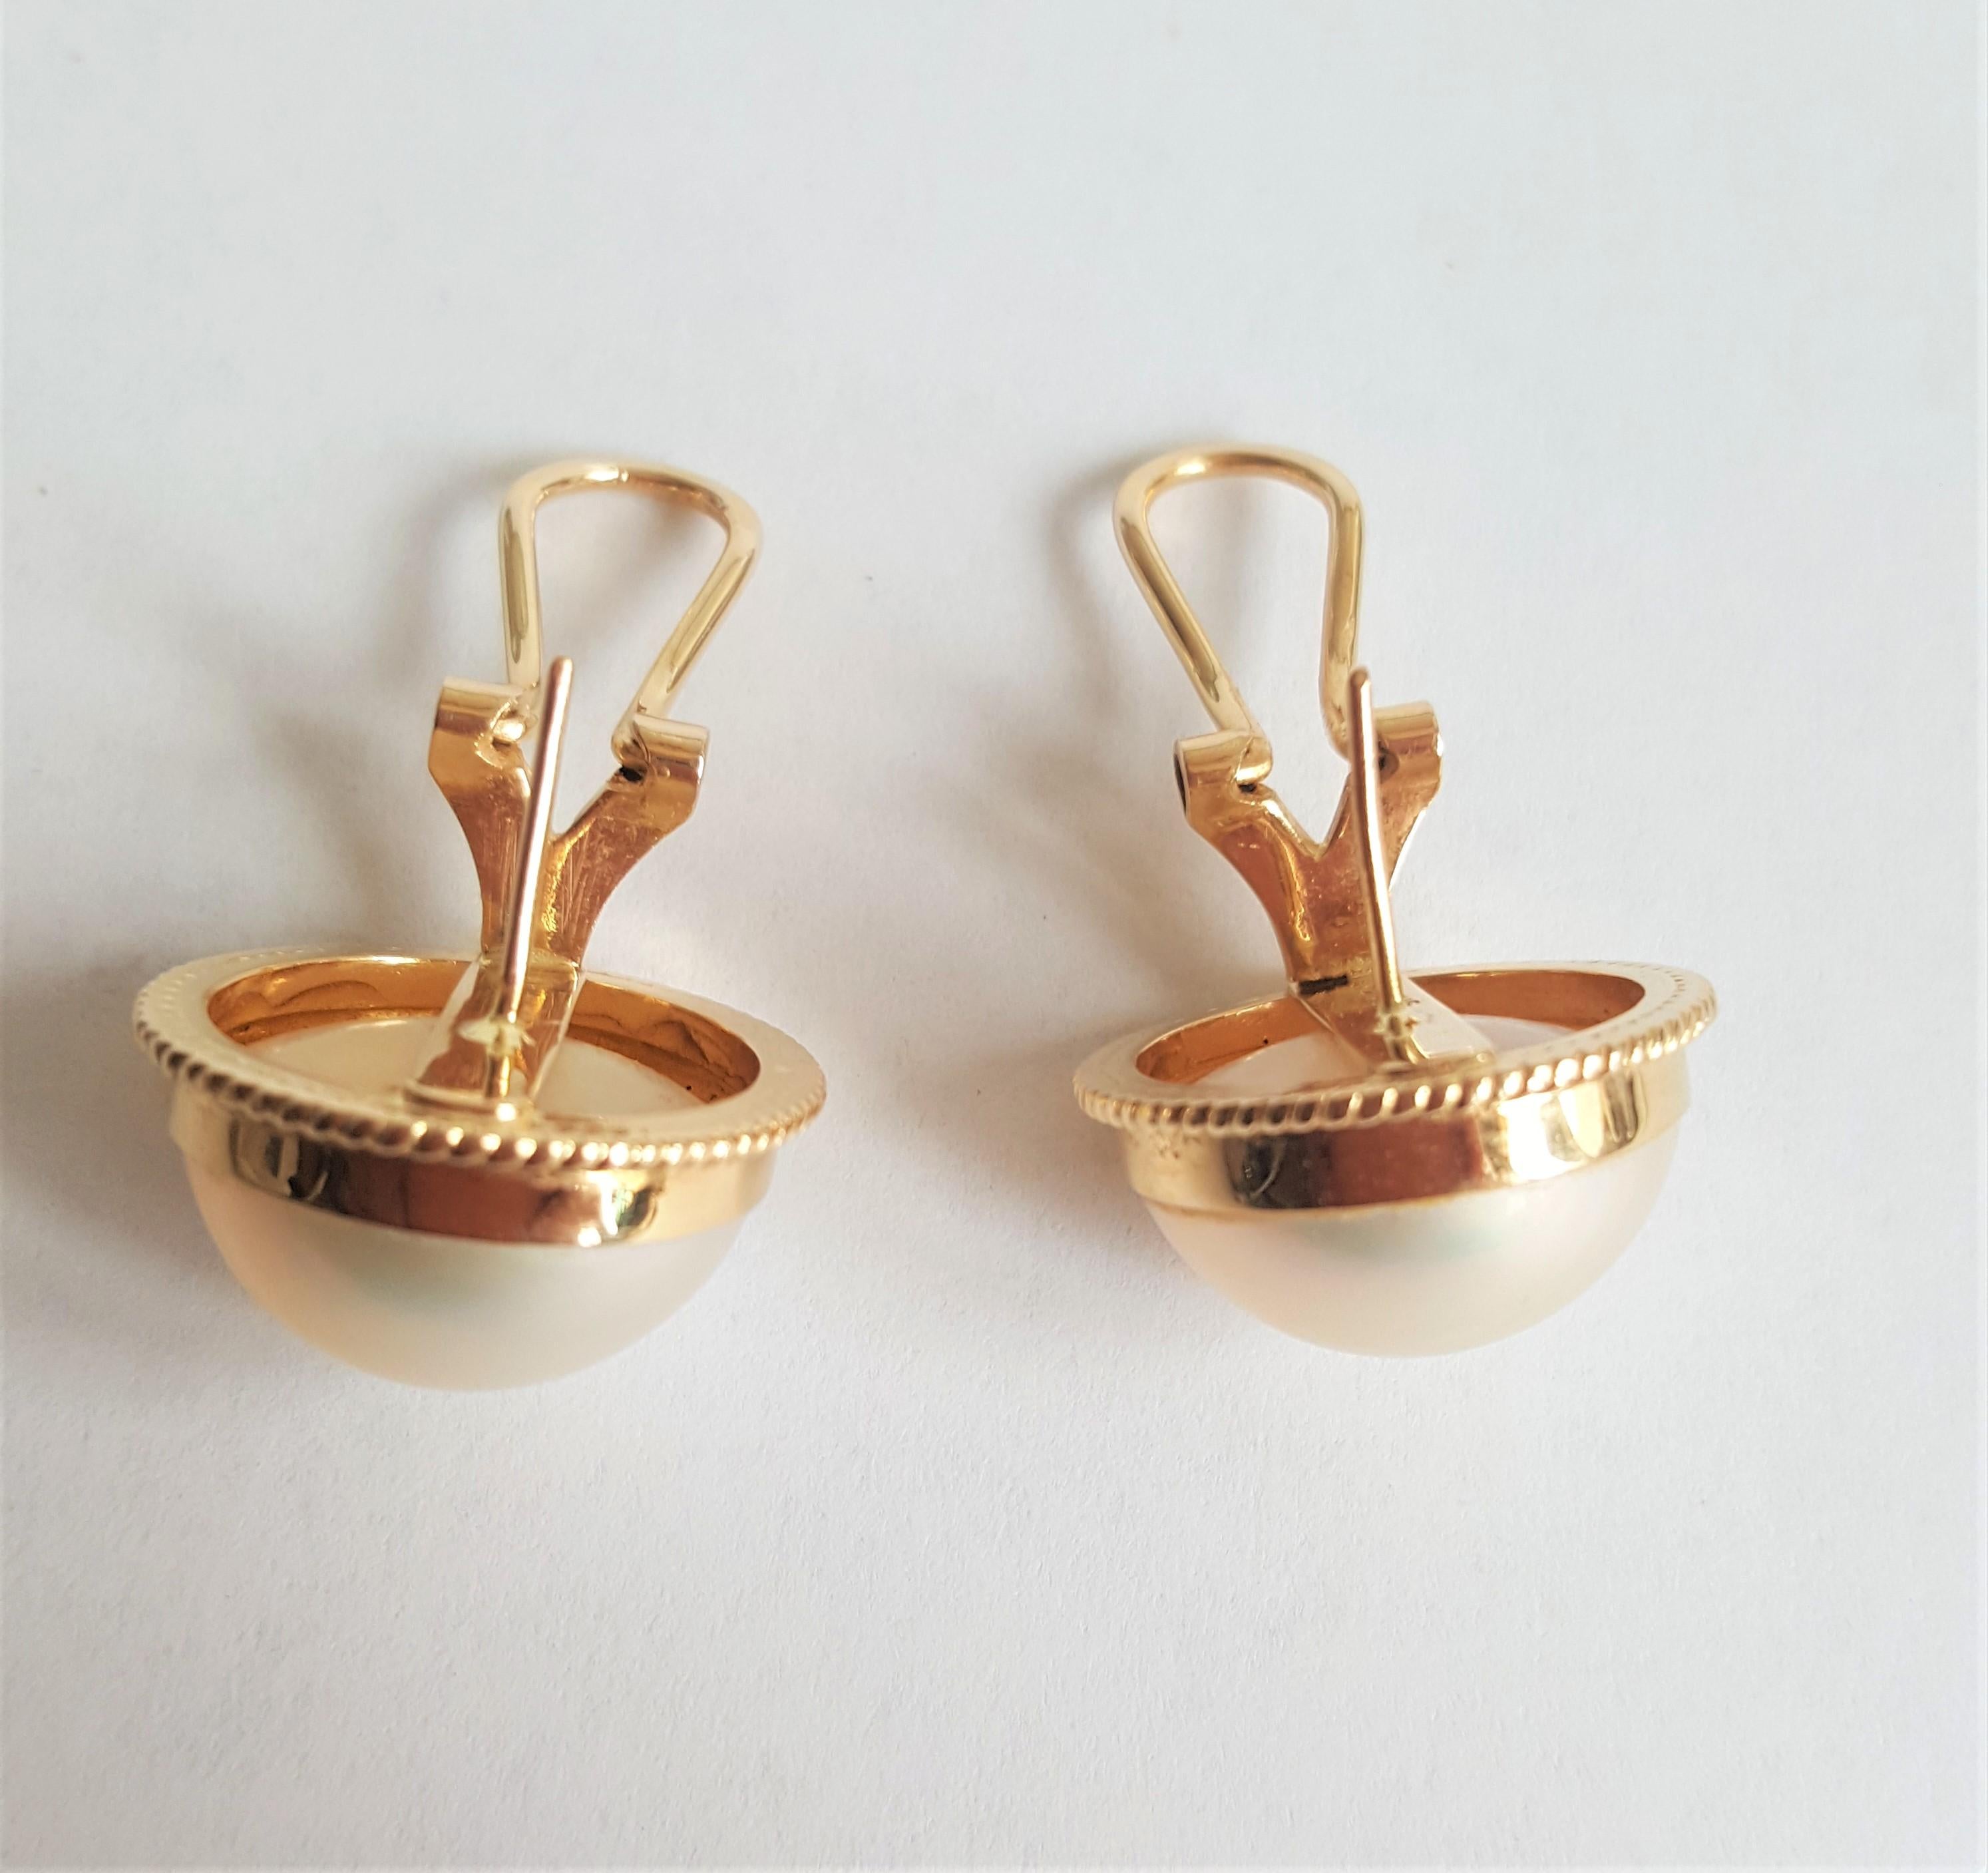 Magnifiques boucles d'oreilles en or jaune 14kt et perles de mabe blanches réalisées par le designer Whiting ; elles sont dotées d'une tige à friction et sont sécurisées par des attaches en oméga. Les perles sont en très bon état et ont une nacre